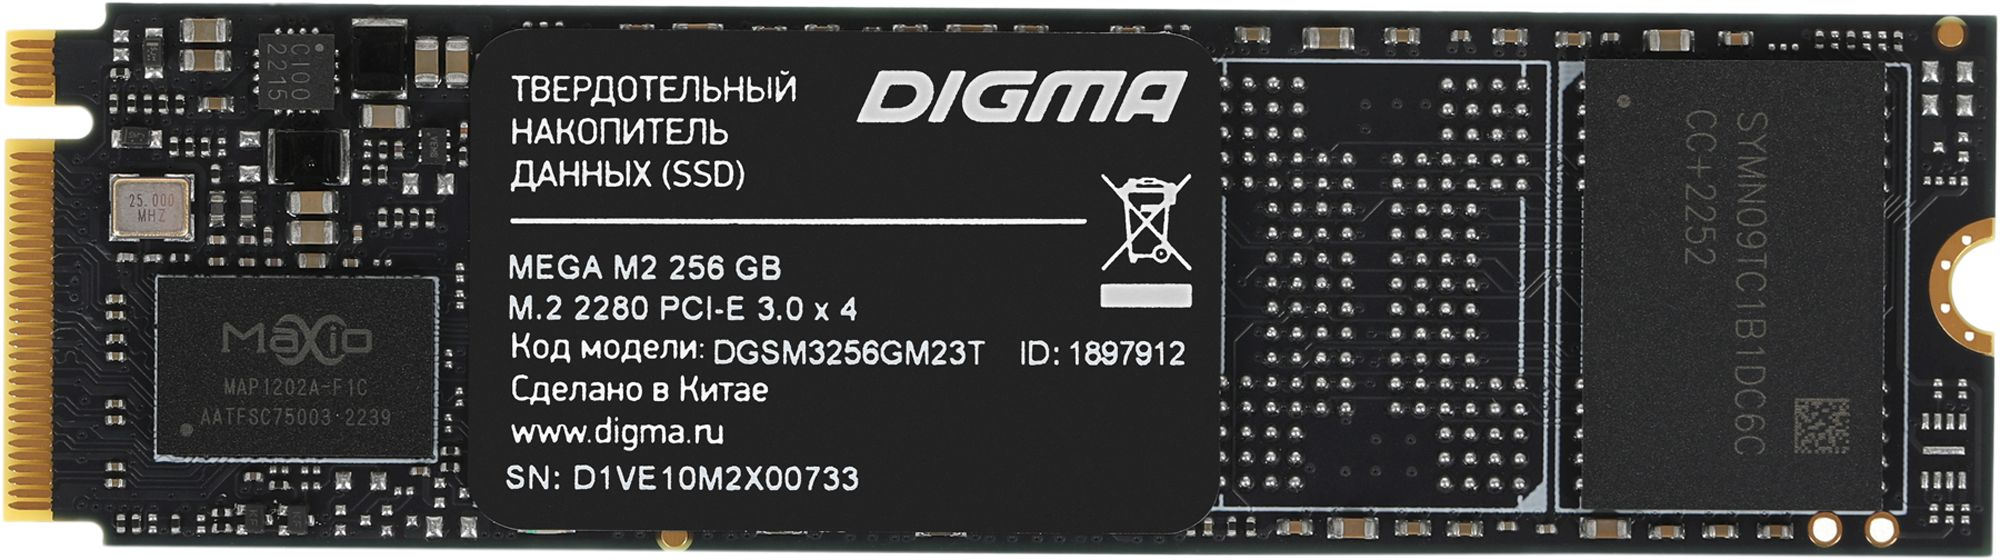 SSD  Digma Mega M2 DGSM3256GM23T 256, M.2 2280, PCIe 3.0 x4,  NVMe,  M.2,  rtl